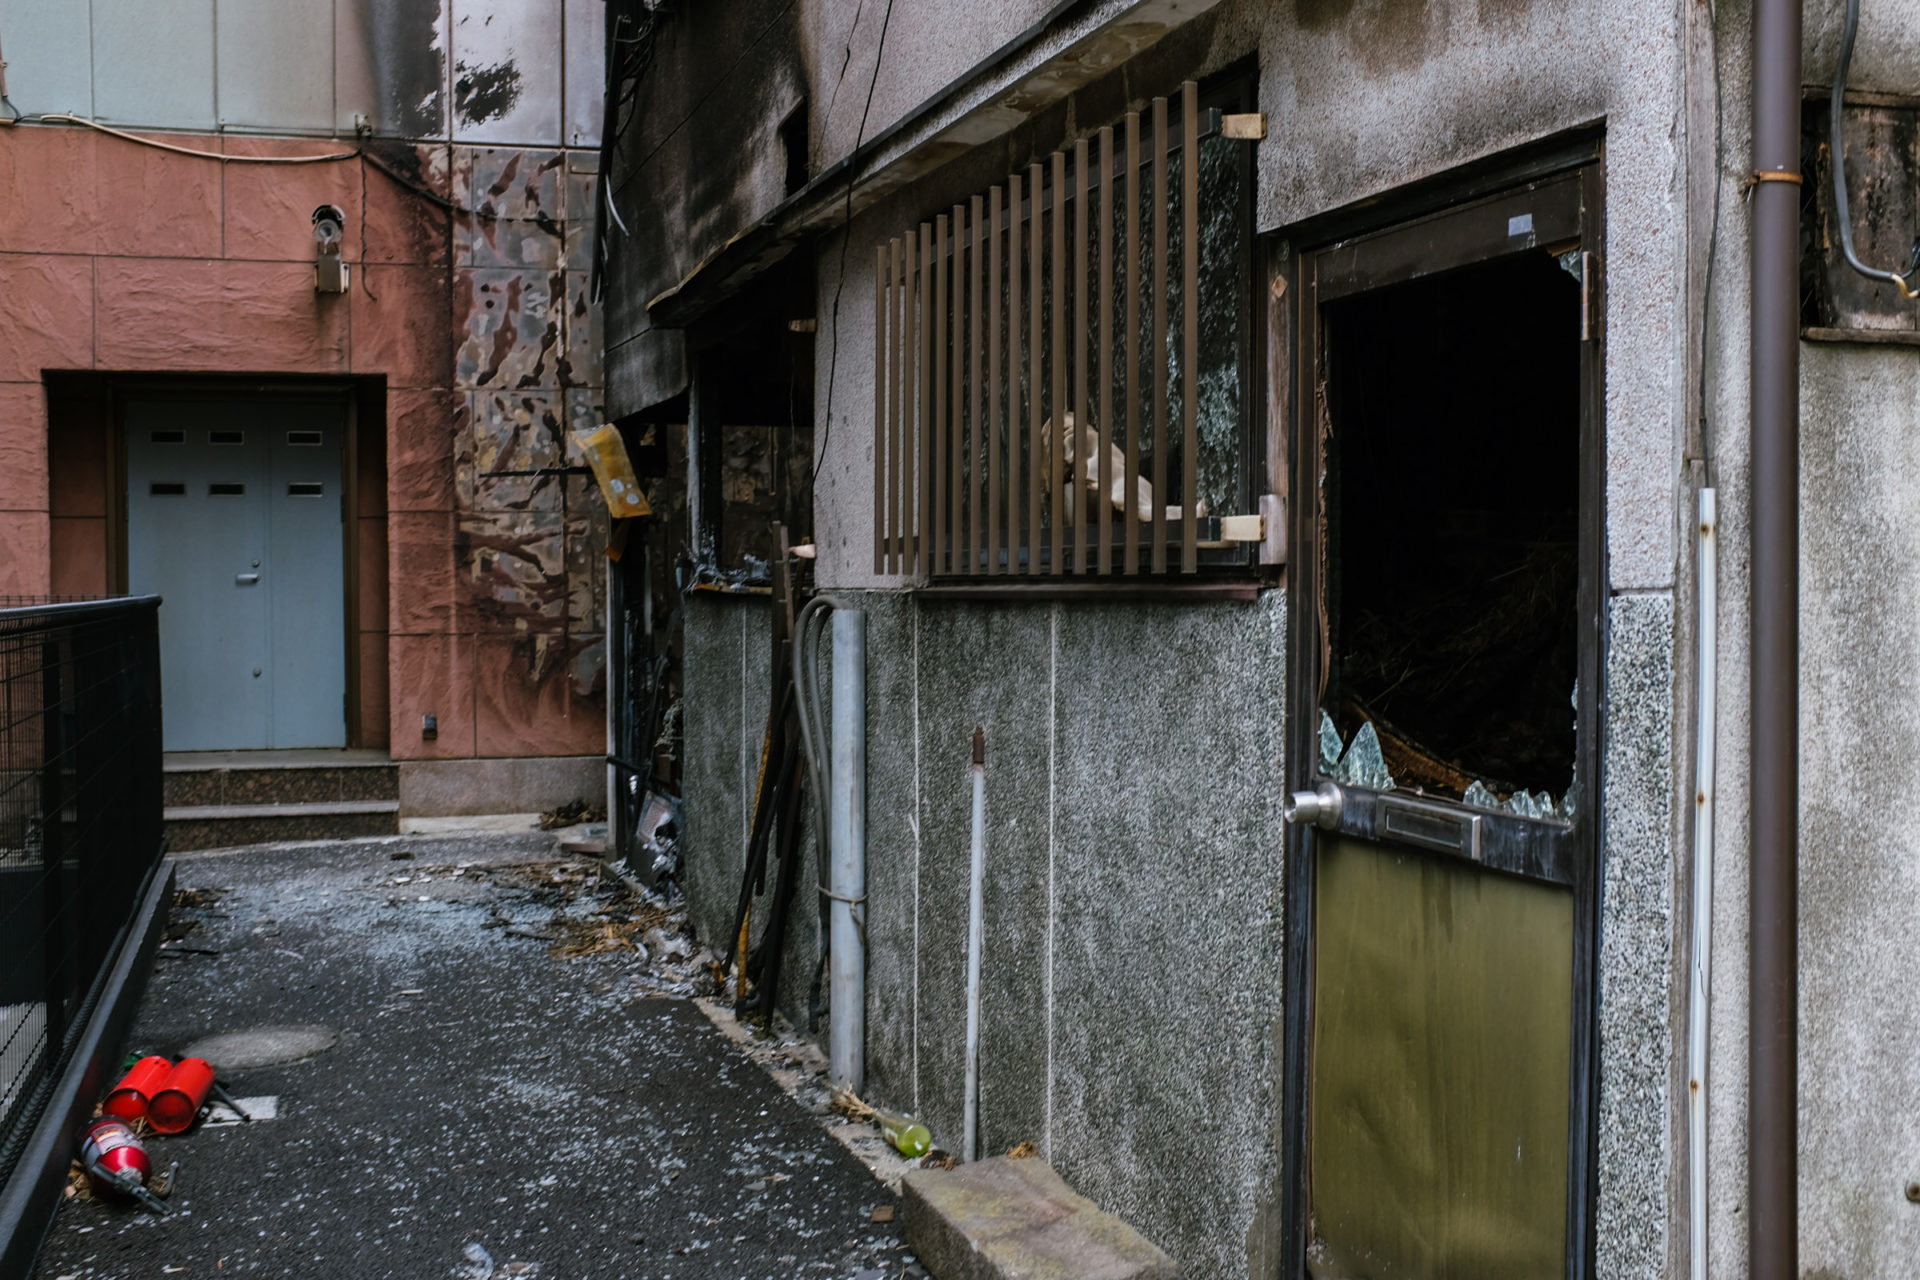 Doburoku Yokocho in Kawasaki, Tokyo's Hidden Neighborhood